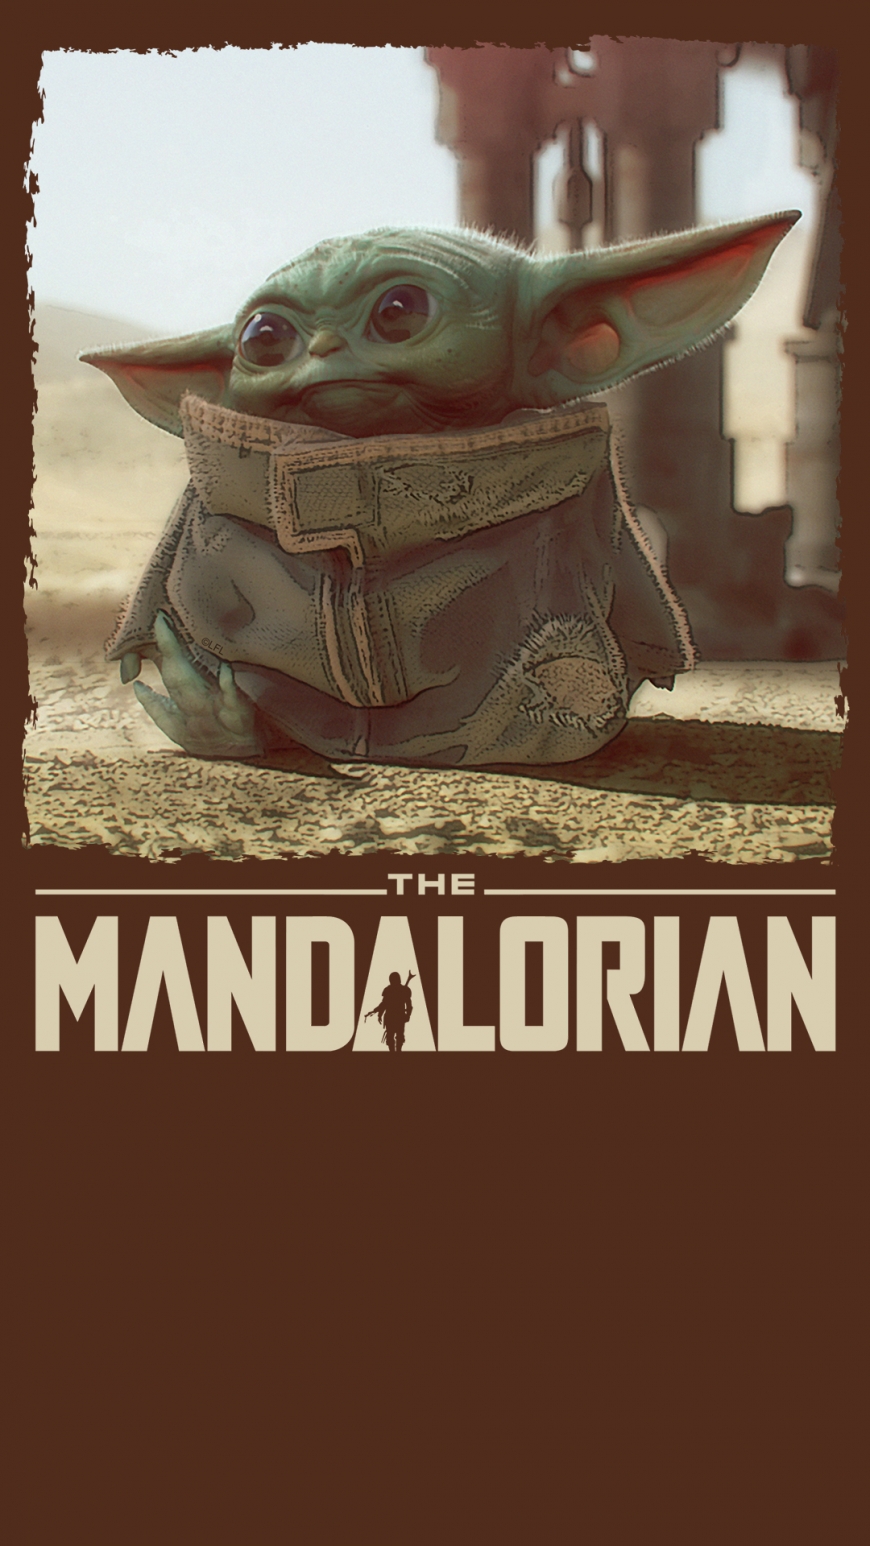 The Mandalorian Baby Yoda wallaper